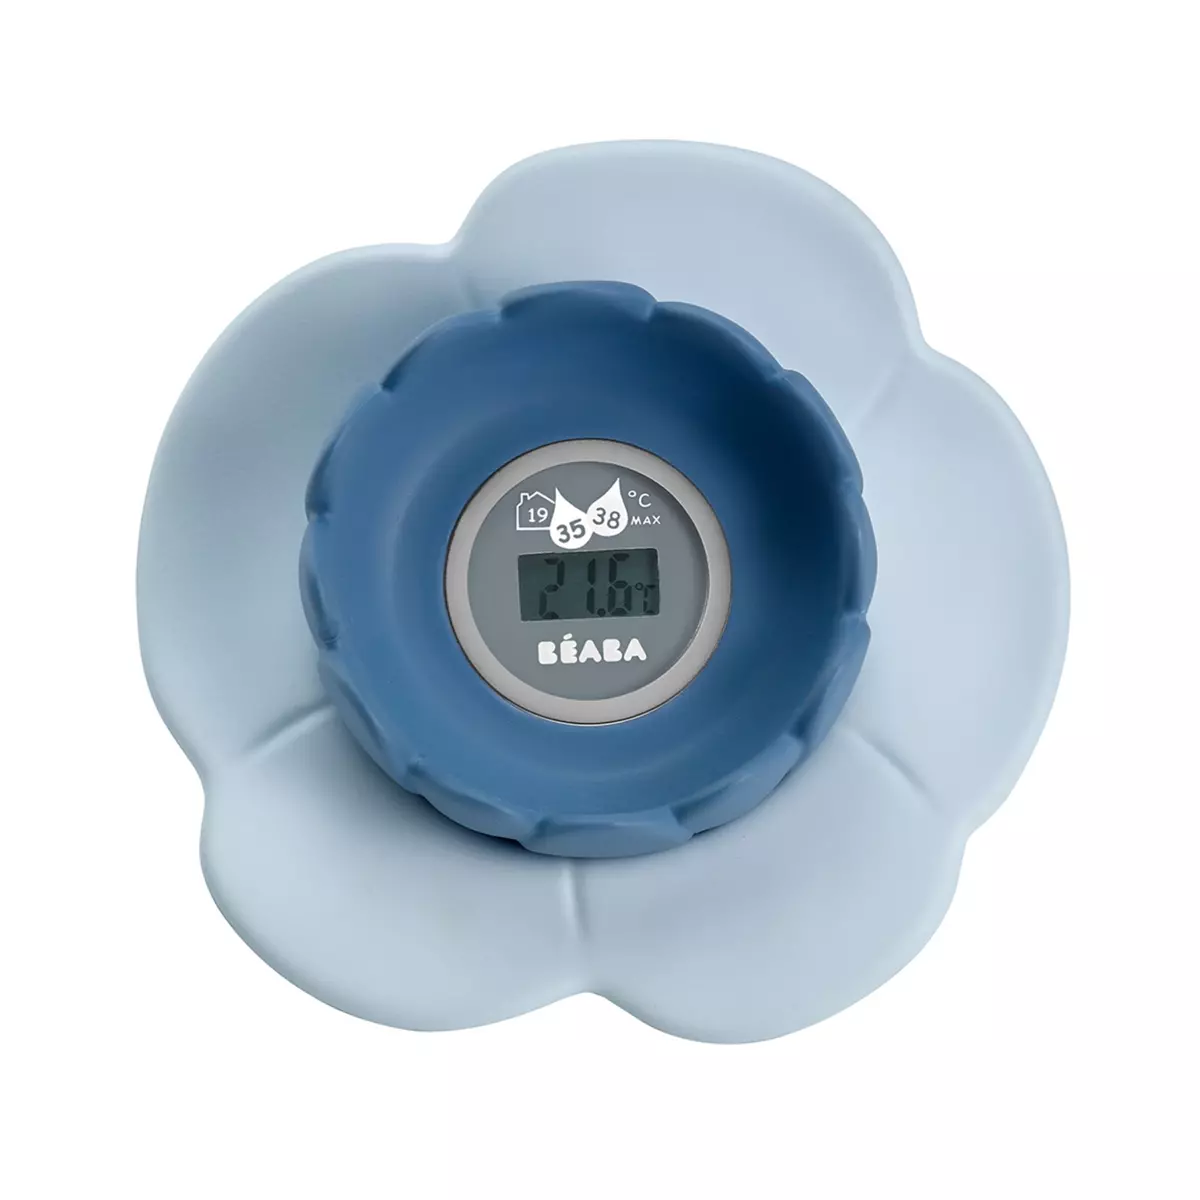 BEABA Thermomètre de bain numérique "Lotus" bleu